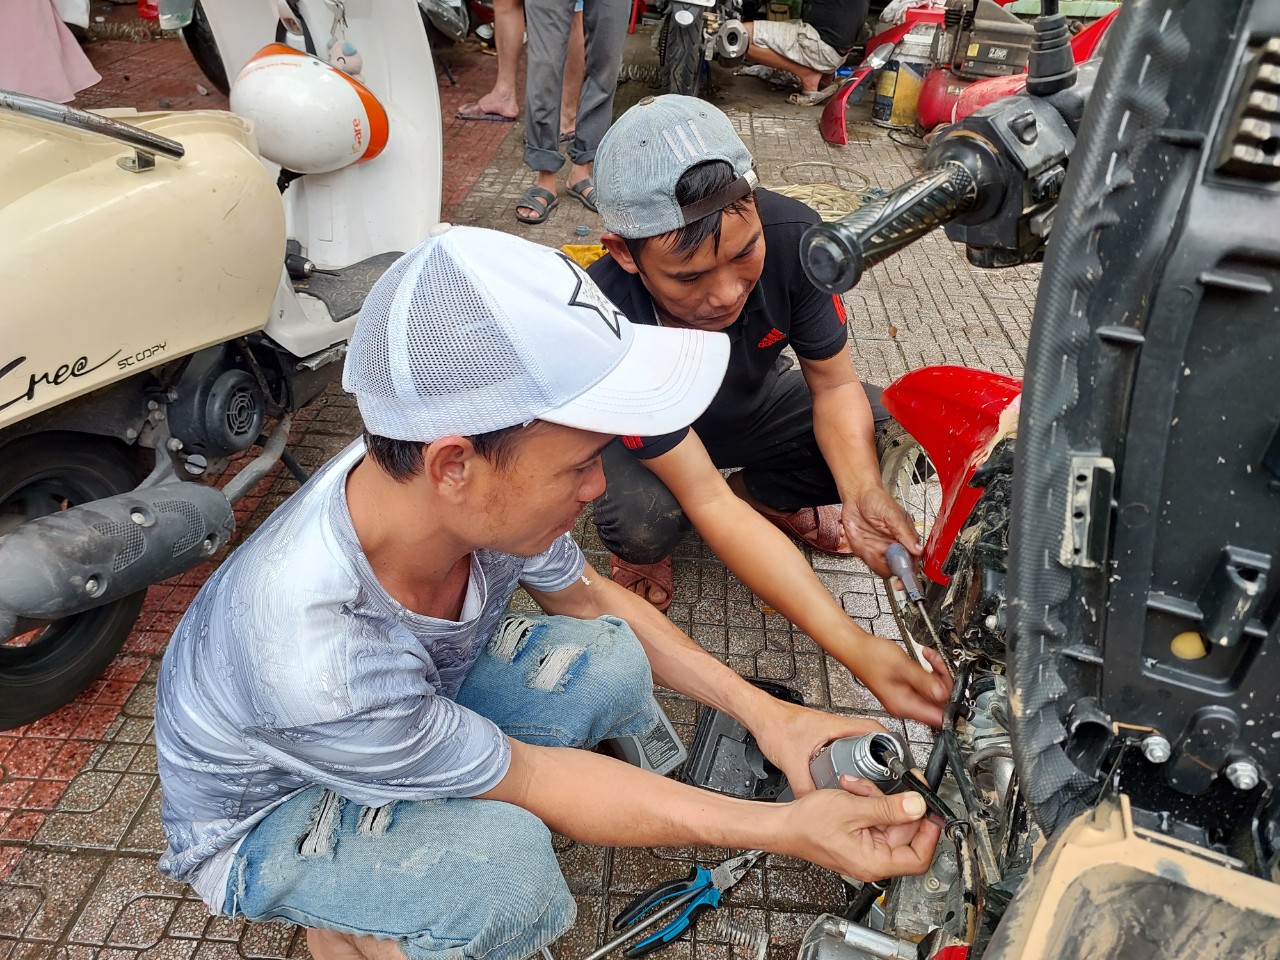 Sửa xe máy miễn phí ở Quảng Nam và Đà Nẵng? Đó là sự thật! Hãy đến với chúng tôi để trải nghiệm dịch vụ tuyệt vời này. Không chỉ nhanh chóng và chuyên nghiệp, chúng tôi còn sử dụng các thiết bị tiên tiến và đội ngũ nhân viên lành nghề.